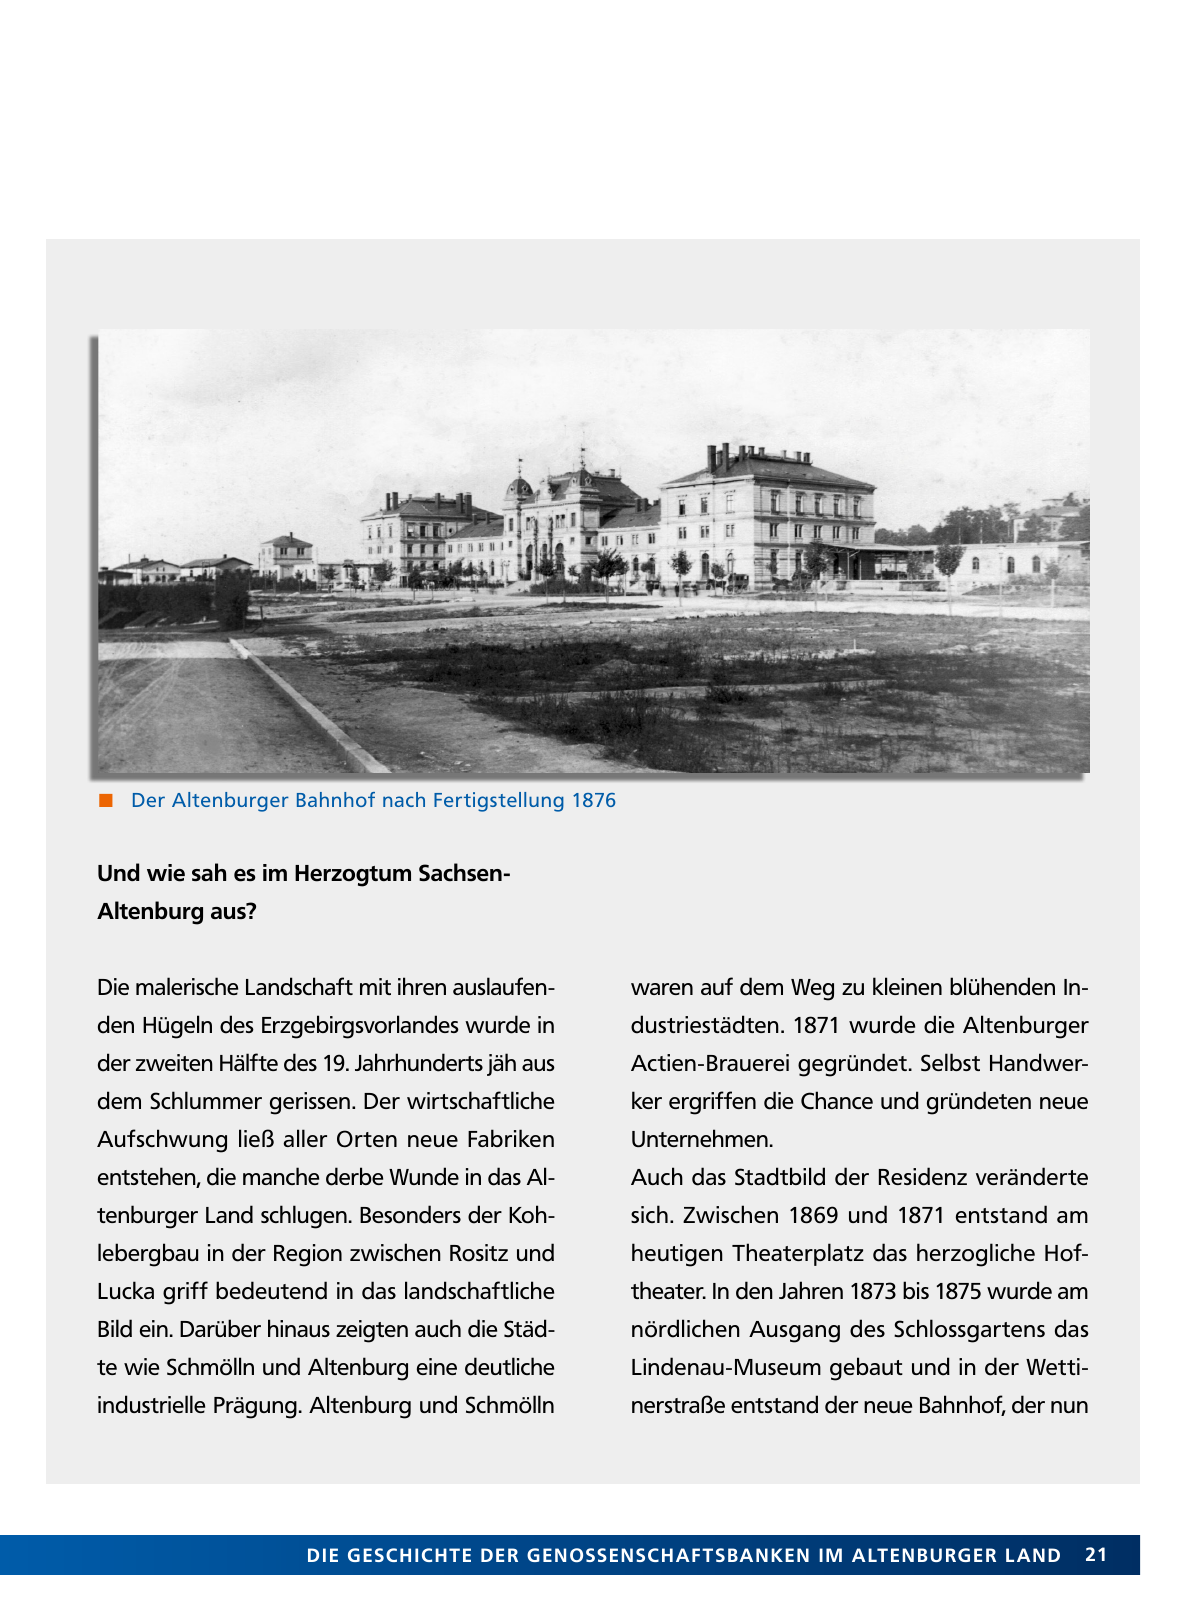 Vorschau Von der Idee, sich selbst zu helfen – 150 Jahre genossenschaftliches Bankwesen im Altenburger Land Seite 21